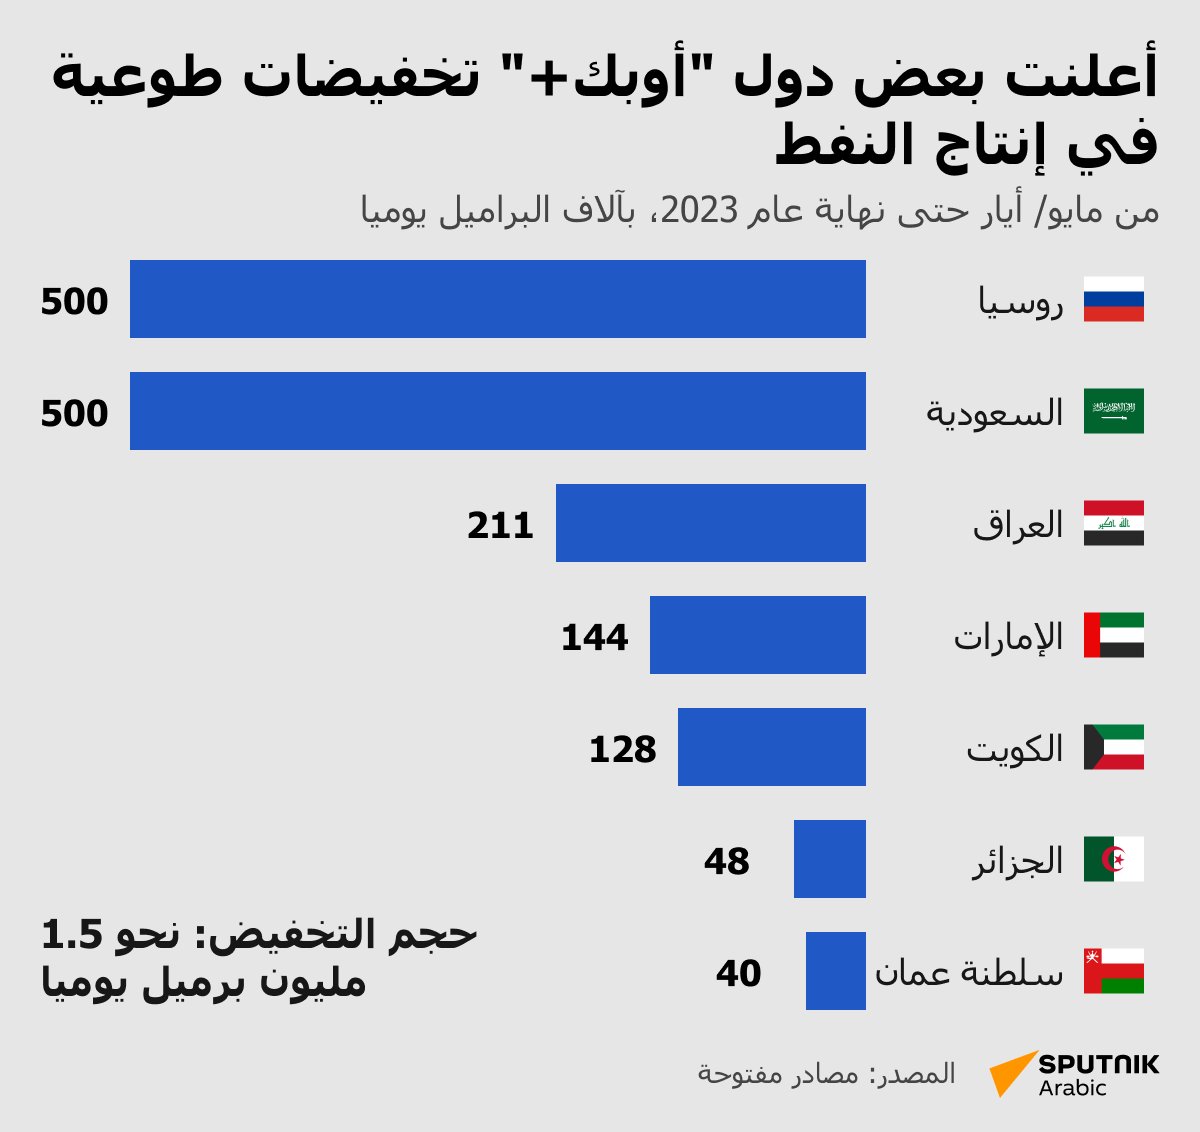 أعلنت بعض دول أوبك+ تخفيضات طوعية في إنتاج النفط - سبوتنيك عربي